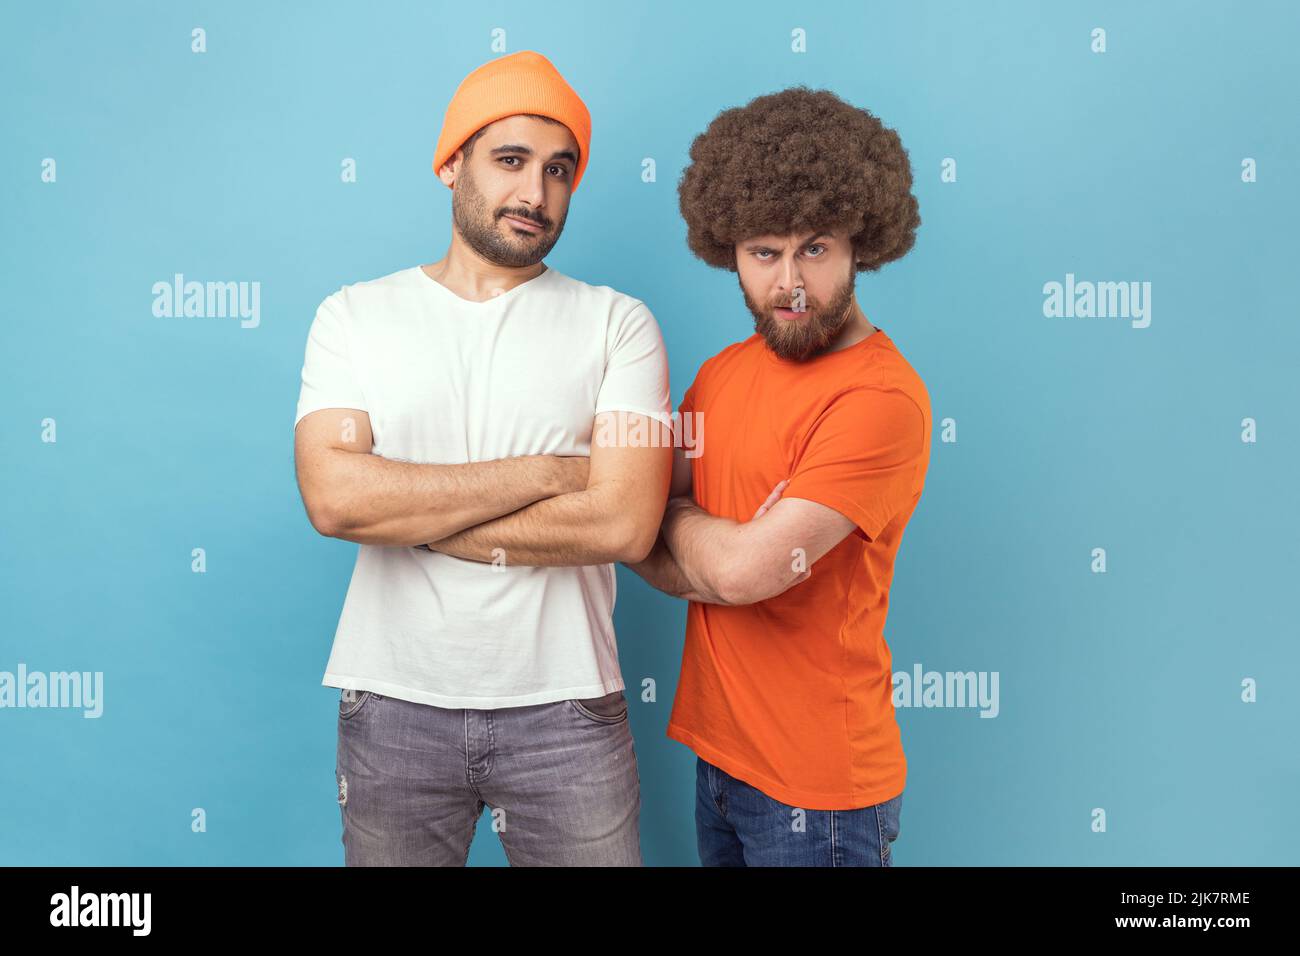 Porträt zweier hübscher, seriöser junger Hipster-Männer, die mit selbstbewusster Gesichtsausdruck die Kamera betrachten und die Hände gefaltet halten. Innenaufnahme des Studios isoliert auf blauem Hintergrund. Stockfoto